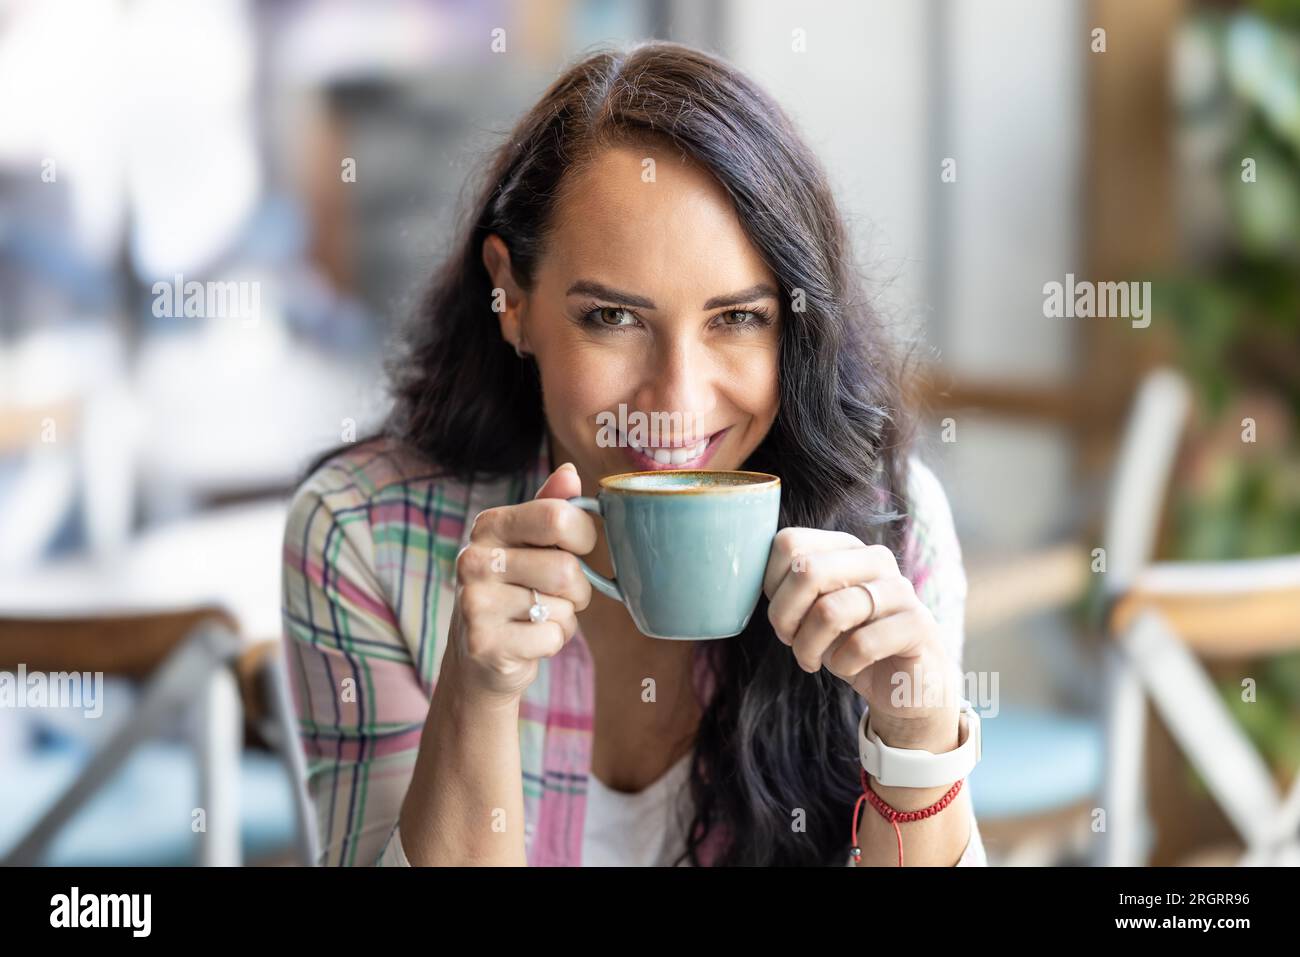 Una bruna attraente di buon umore gusta un cappuccino in una caffetteria. Foto Stock